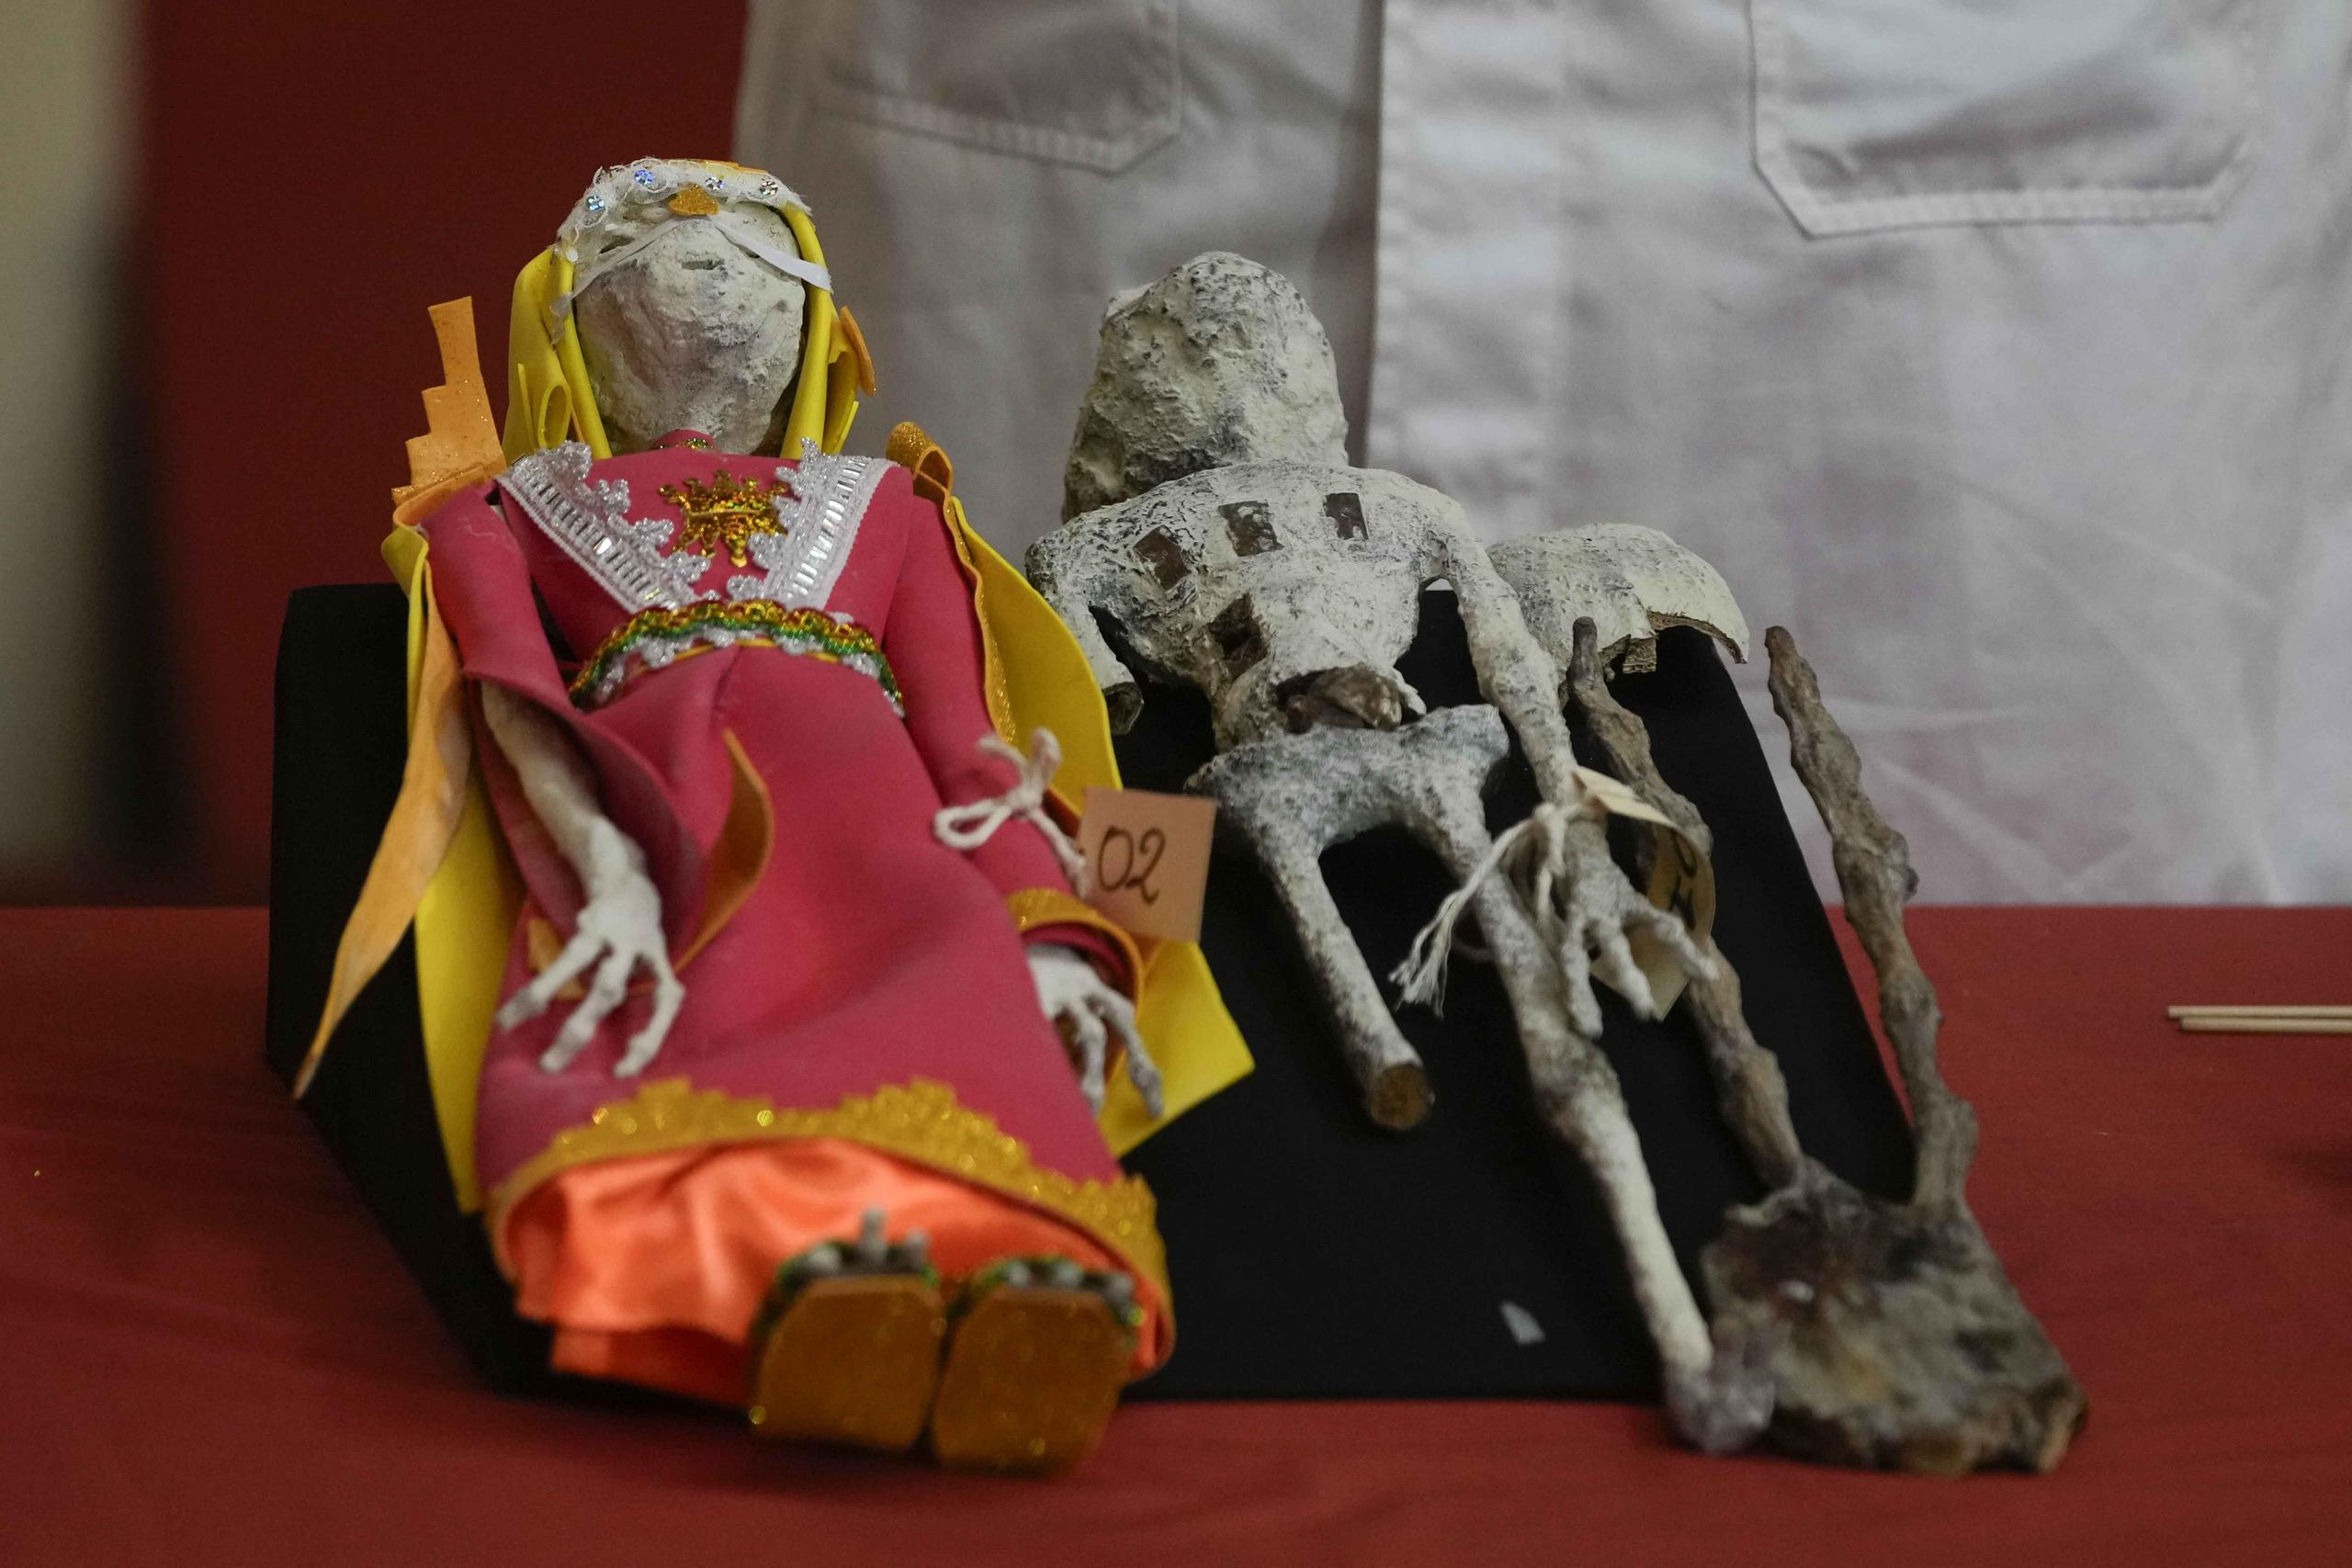 Los expertos mostraron dos pequeños y delgados muñecos de forma humana, de 60 centímetros de largo, vestidos con pequeños trajes de colores rojo, anaranjado y verde.